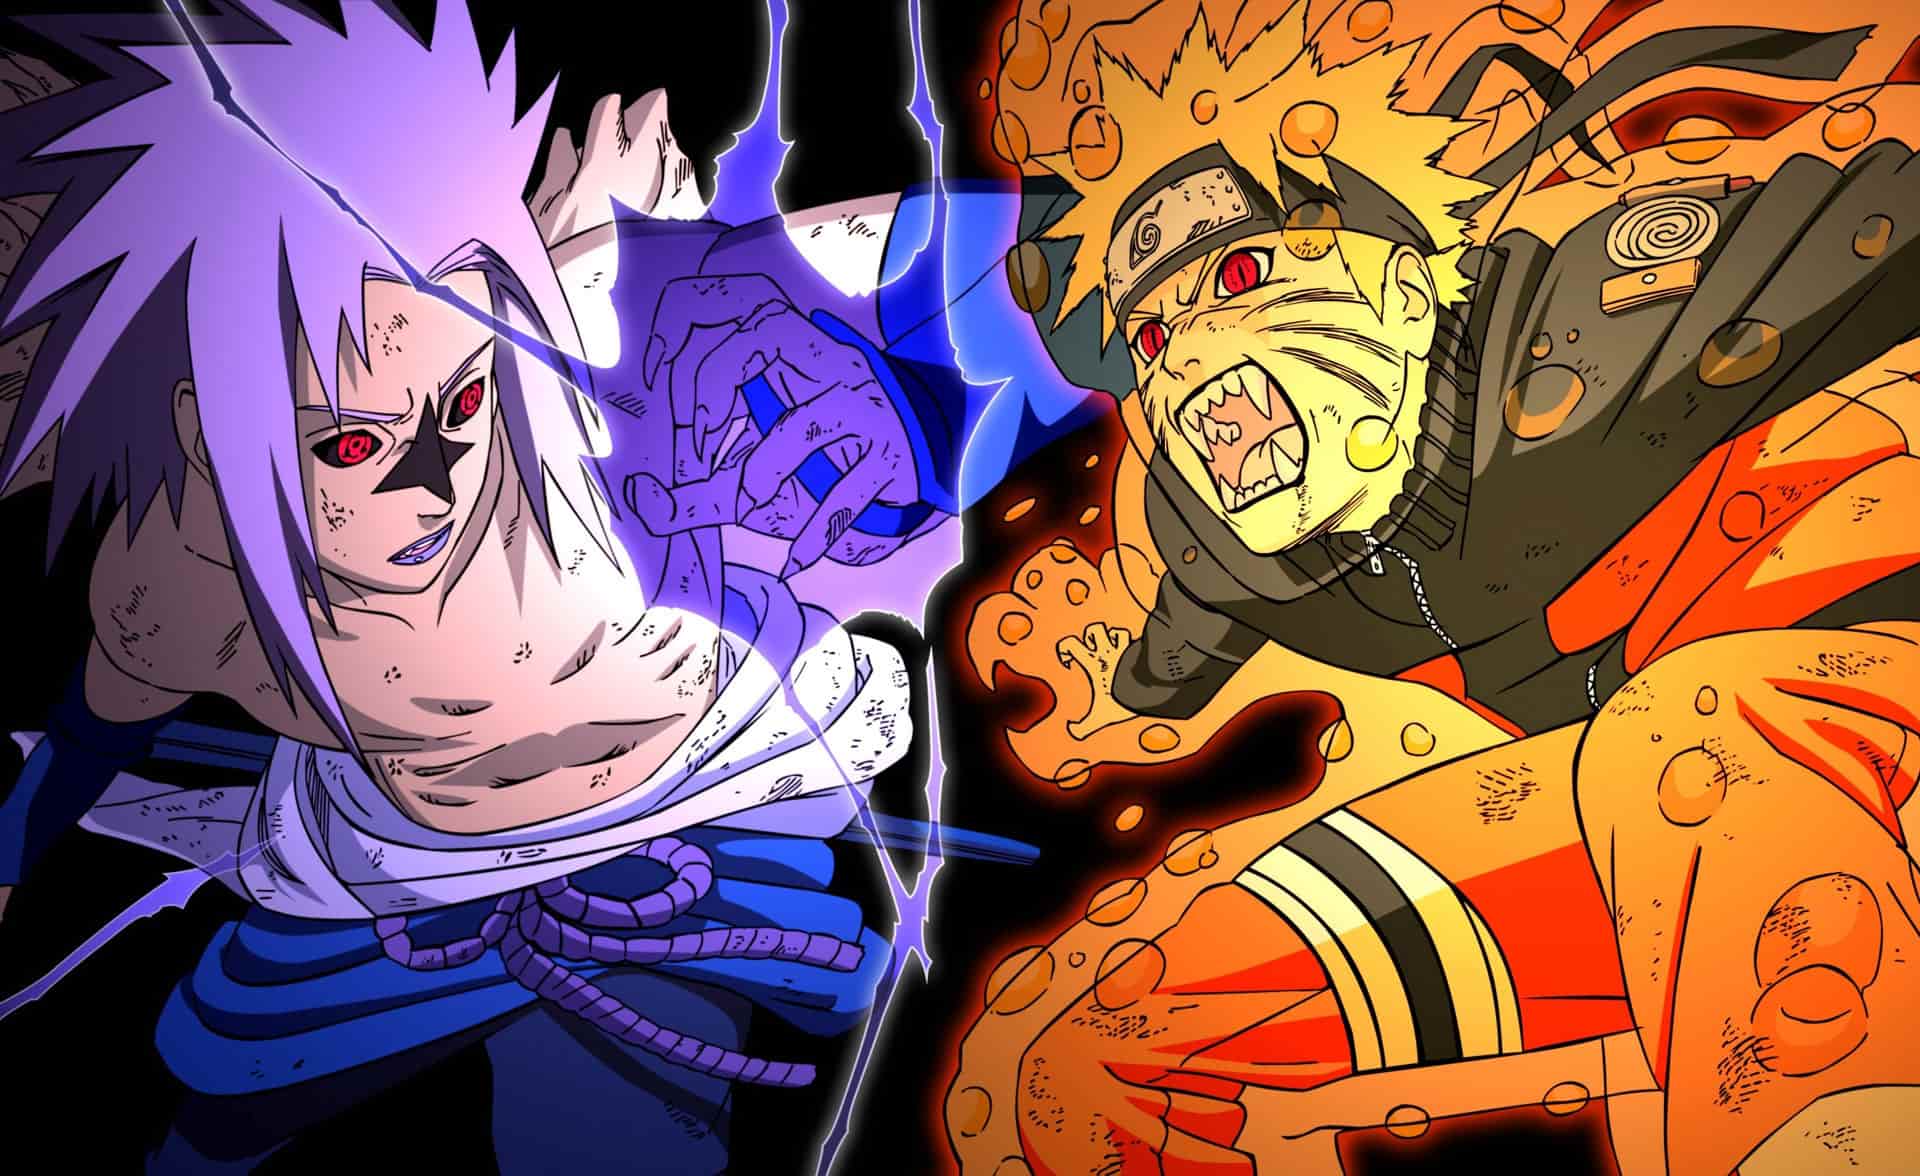 Bộ đôi Naruto và Sasuke - cặp đôi phong cách và đầy cá tính. Avatar đôi của họ sẽ khiến bạn cảm thấy bất ngờ trước tình bạn giữa hai nhân vật, một người hoạt bát và một người lạnh lùng nhưng tình nghĩa bền chặt giữa hai người vẫn được duy trì. Cùng xem để khám phá thêm về chúng nhé!